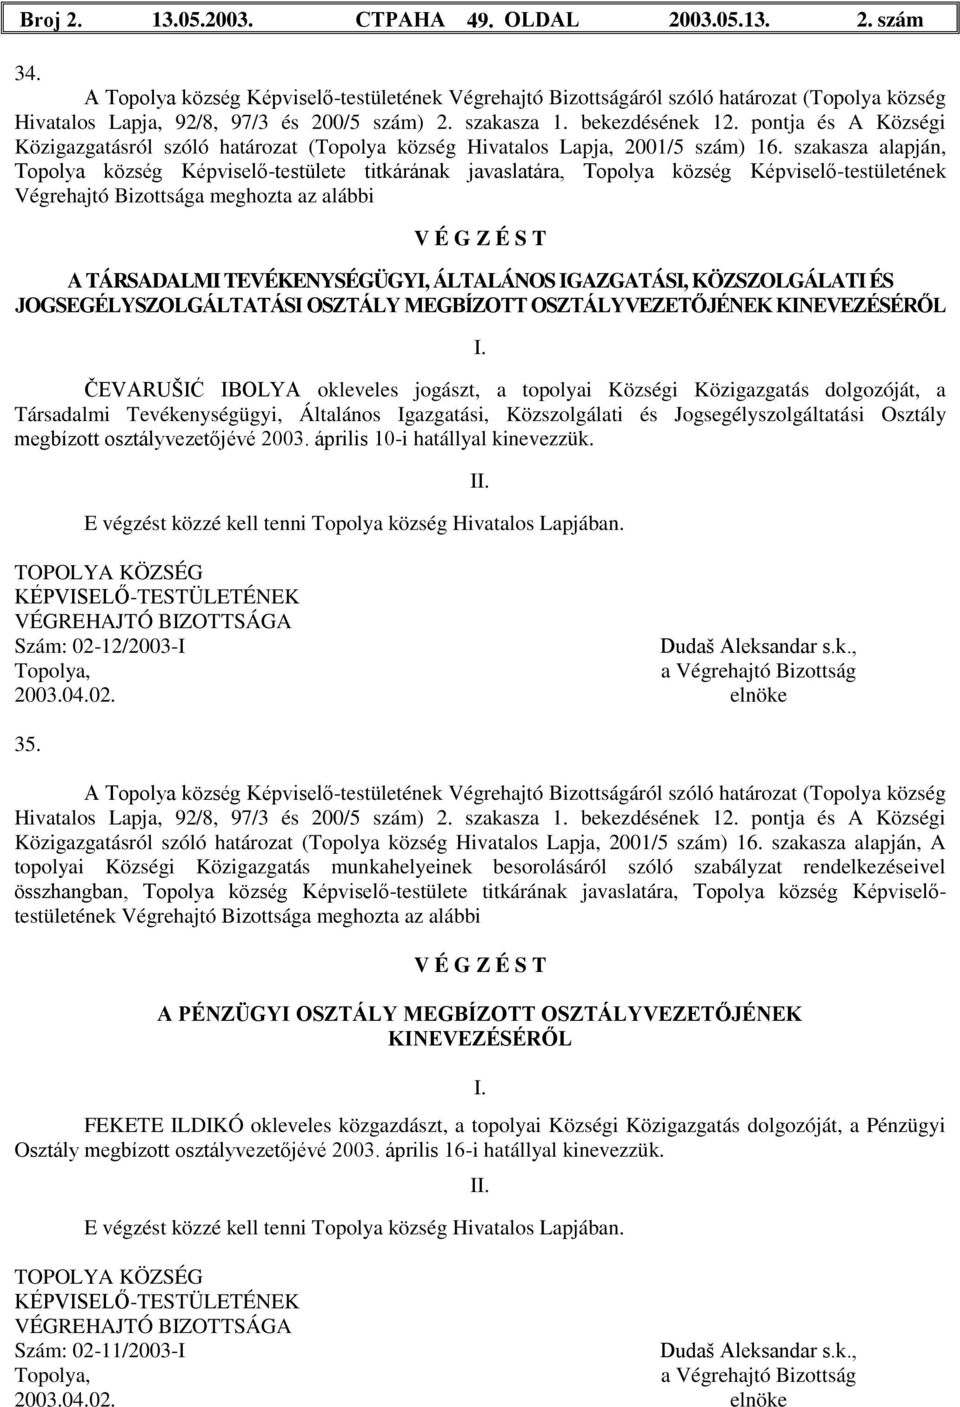 pontja és A Községi Közigazgatásról szóló határozat (Topolya község Hivatalos Lapja, 2001/5 szám) 16.